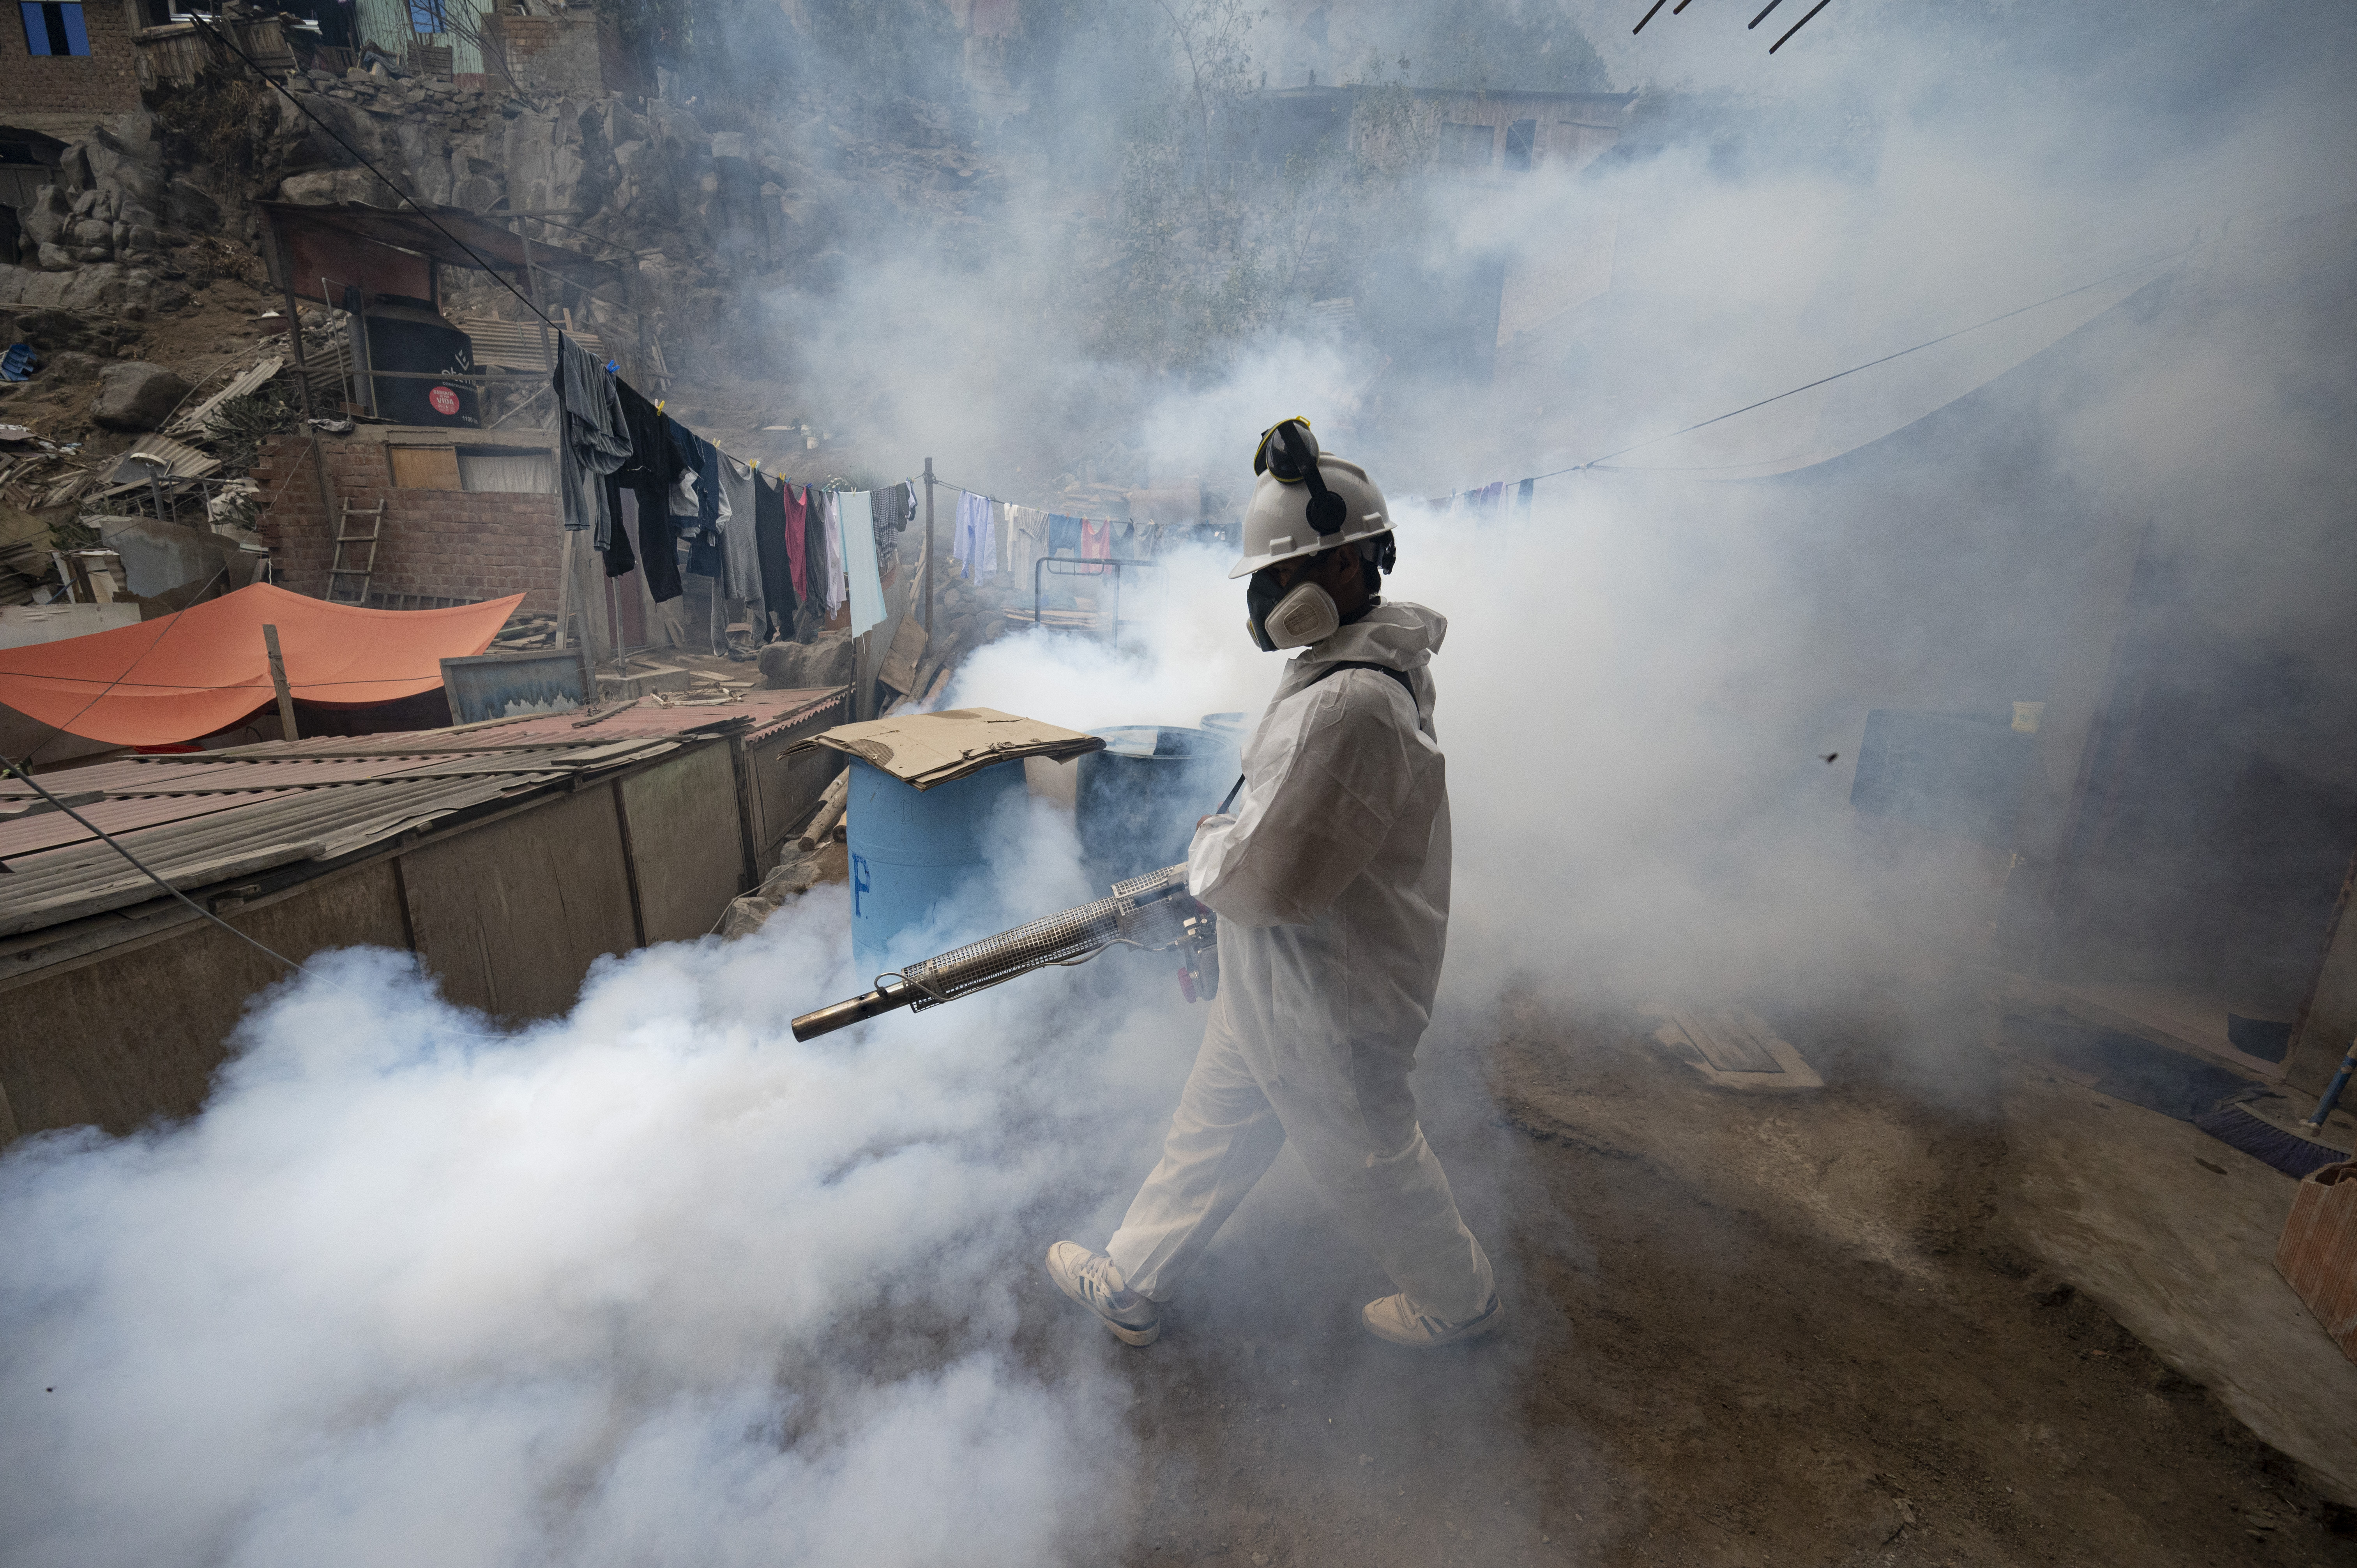 Dengue, stimati fino a 400 mln casi l'anno, prequalifica Oms a secondo vaccino